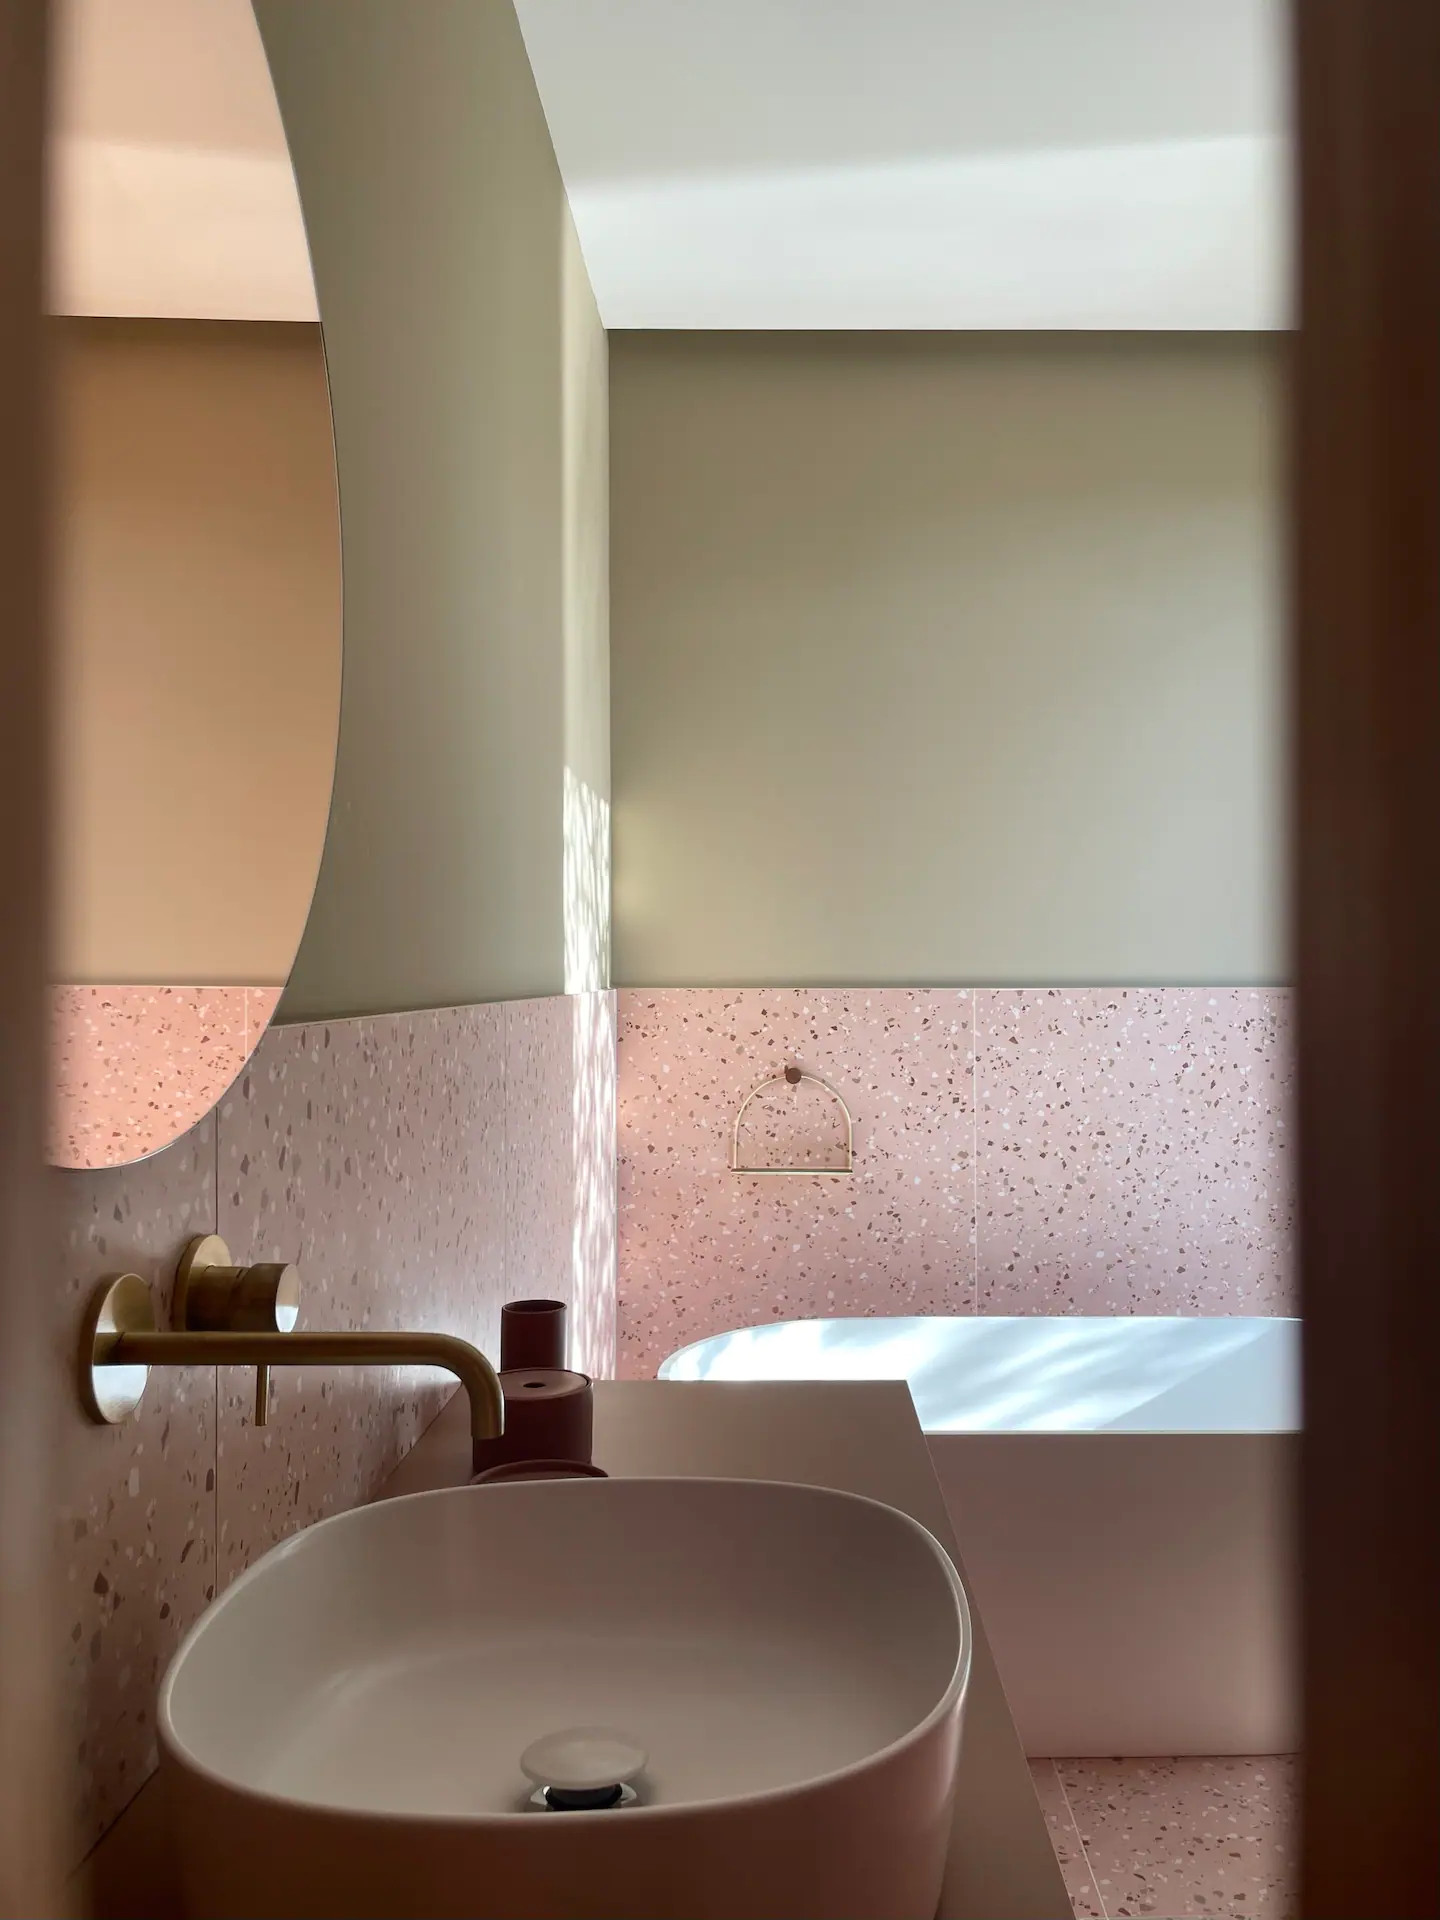 salle de bain design verte et terracotta